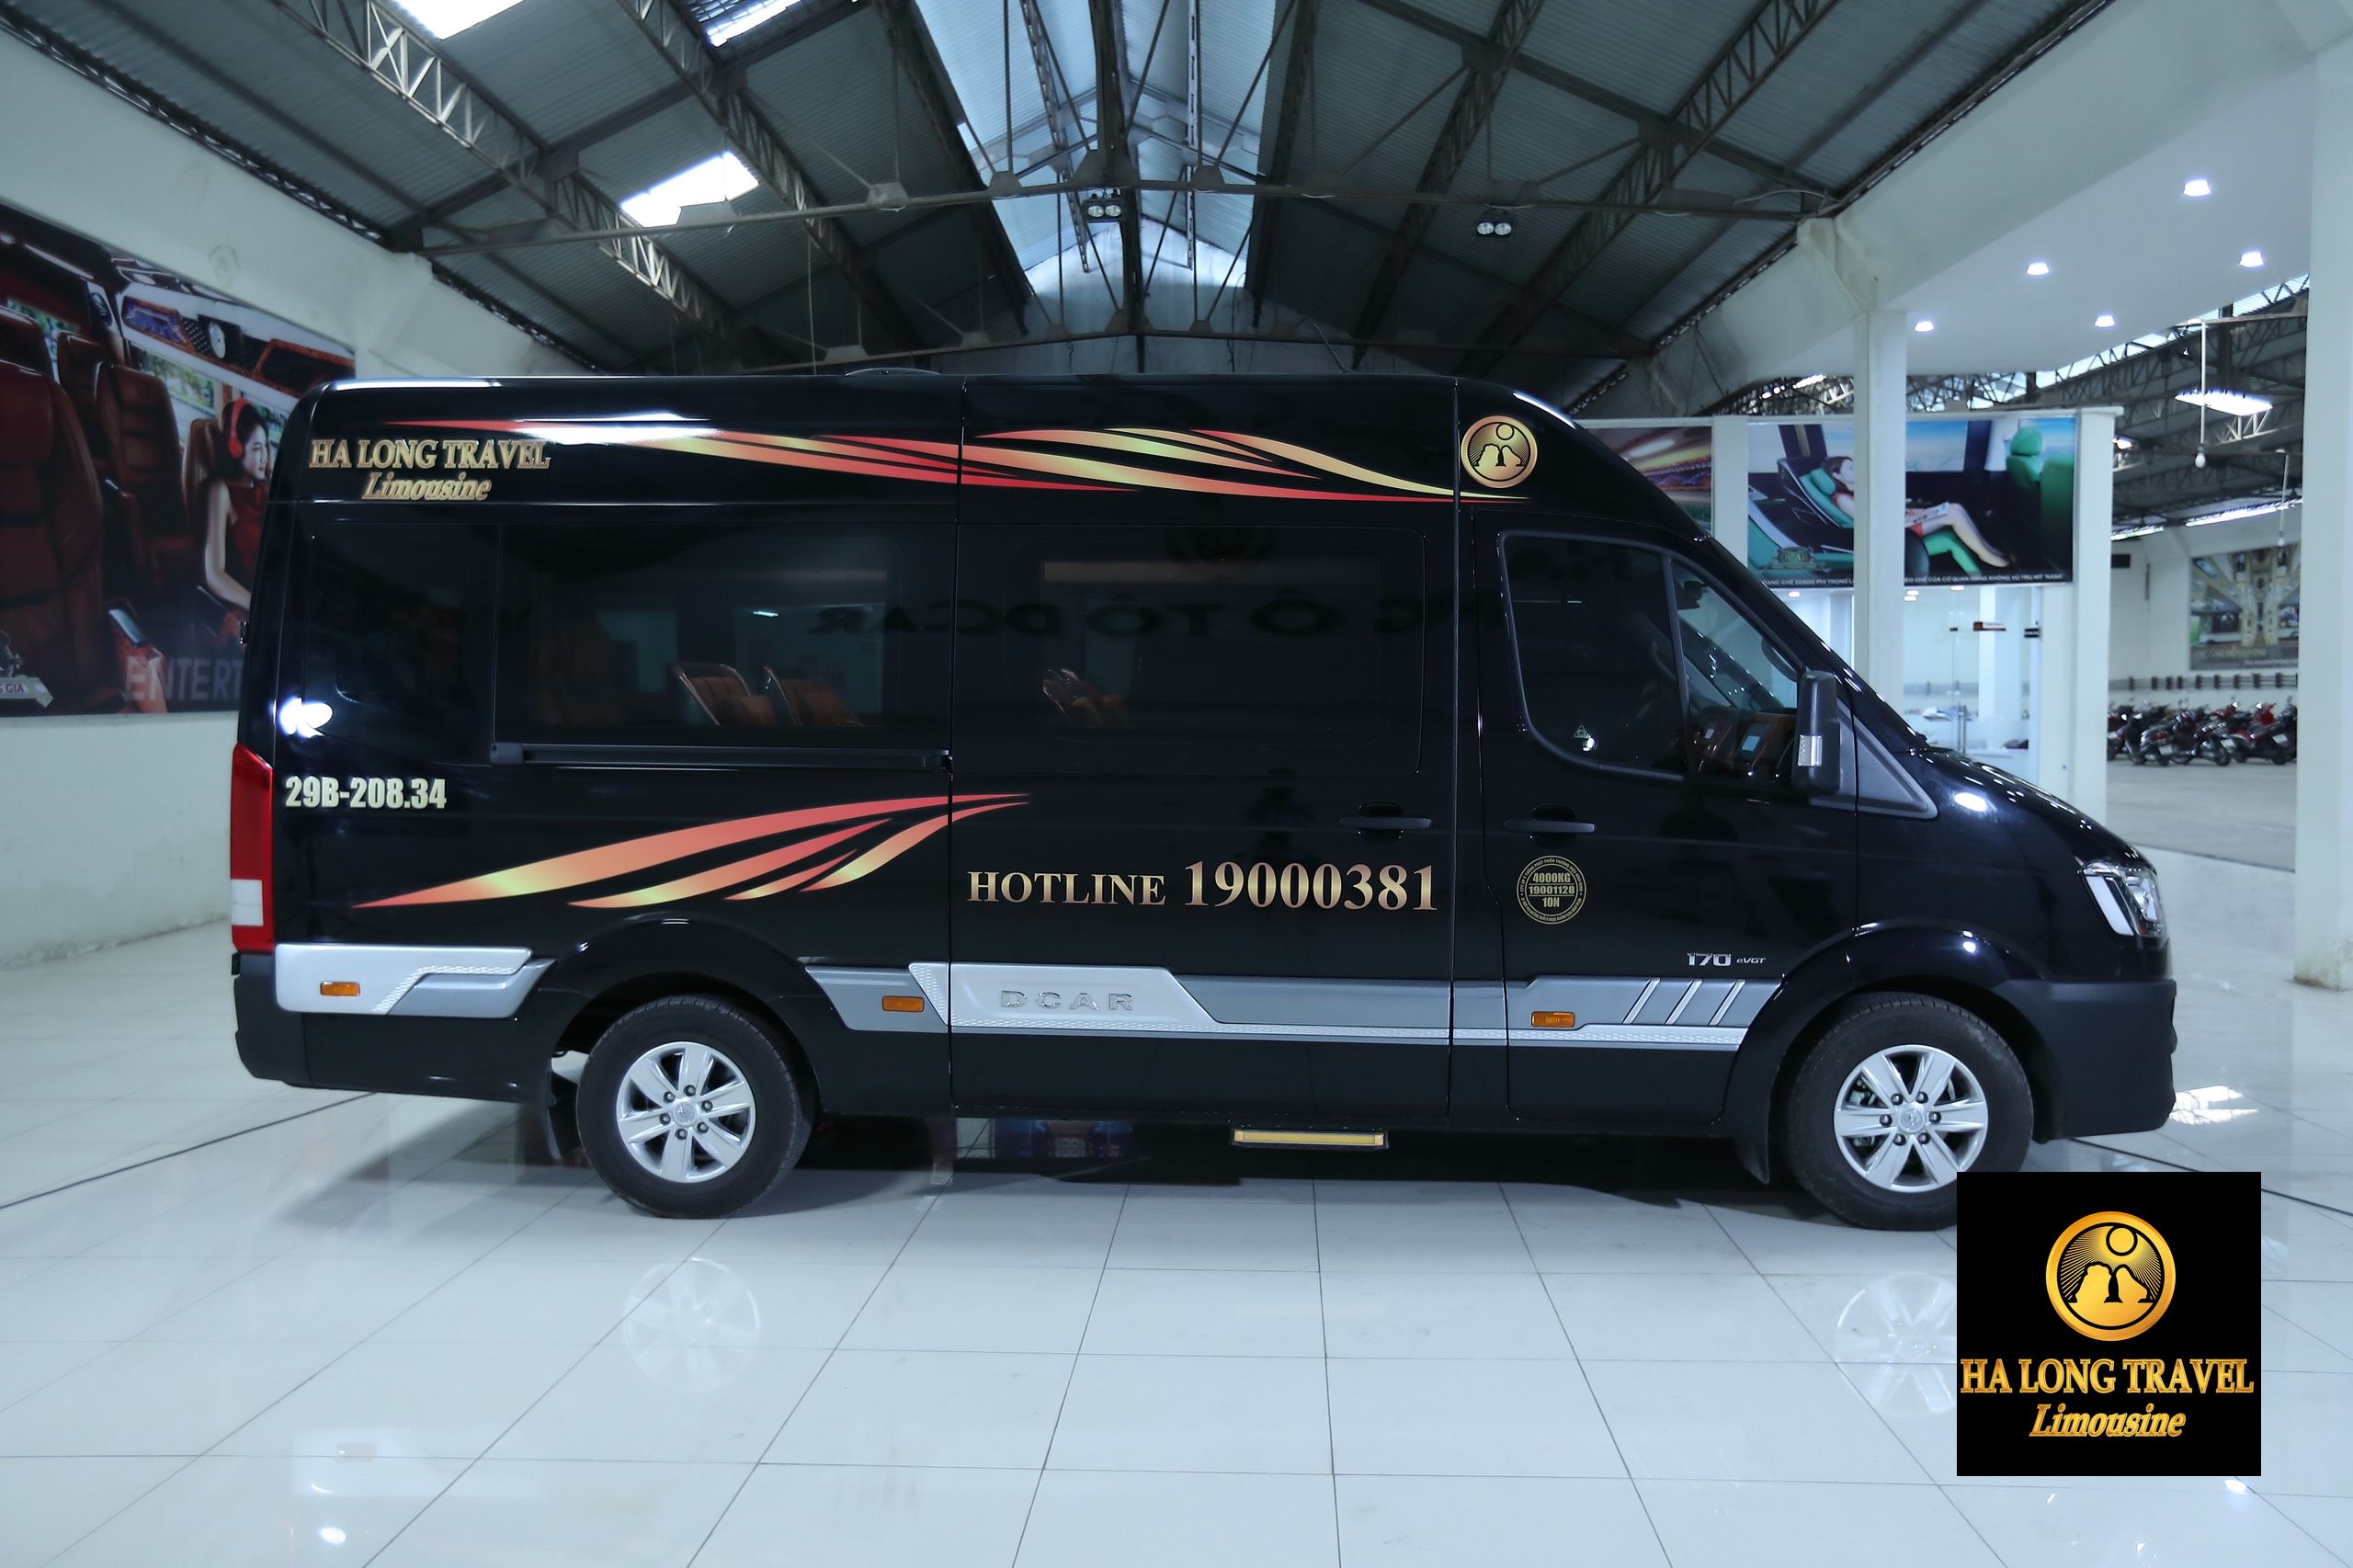 Limousine Hà Nội Lạng Sơn – Top những nhà xe tốt nhất năm 2019